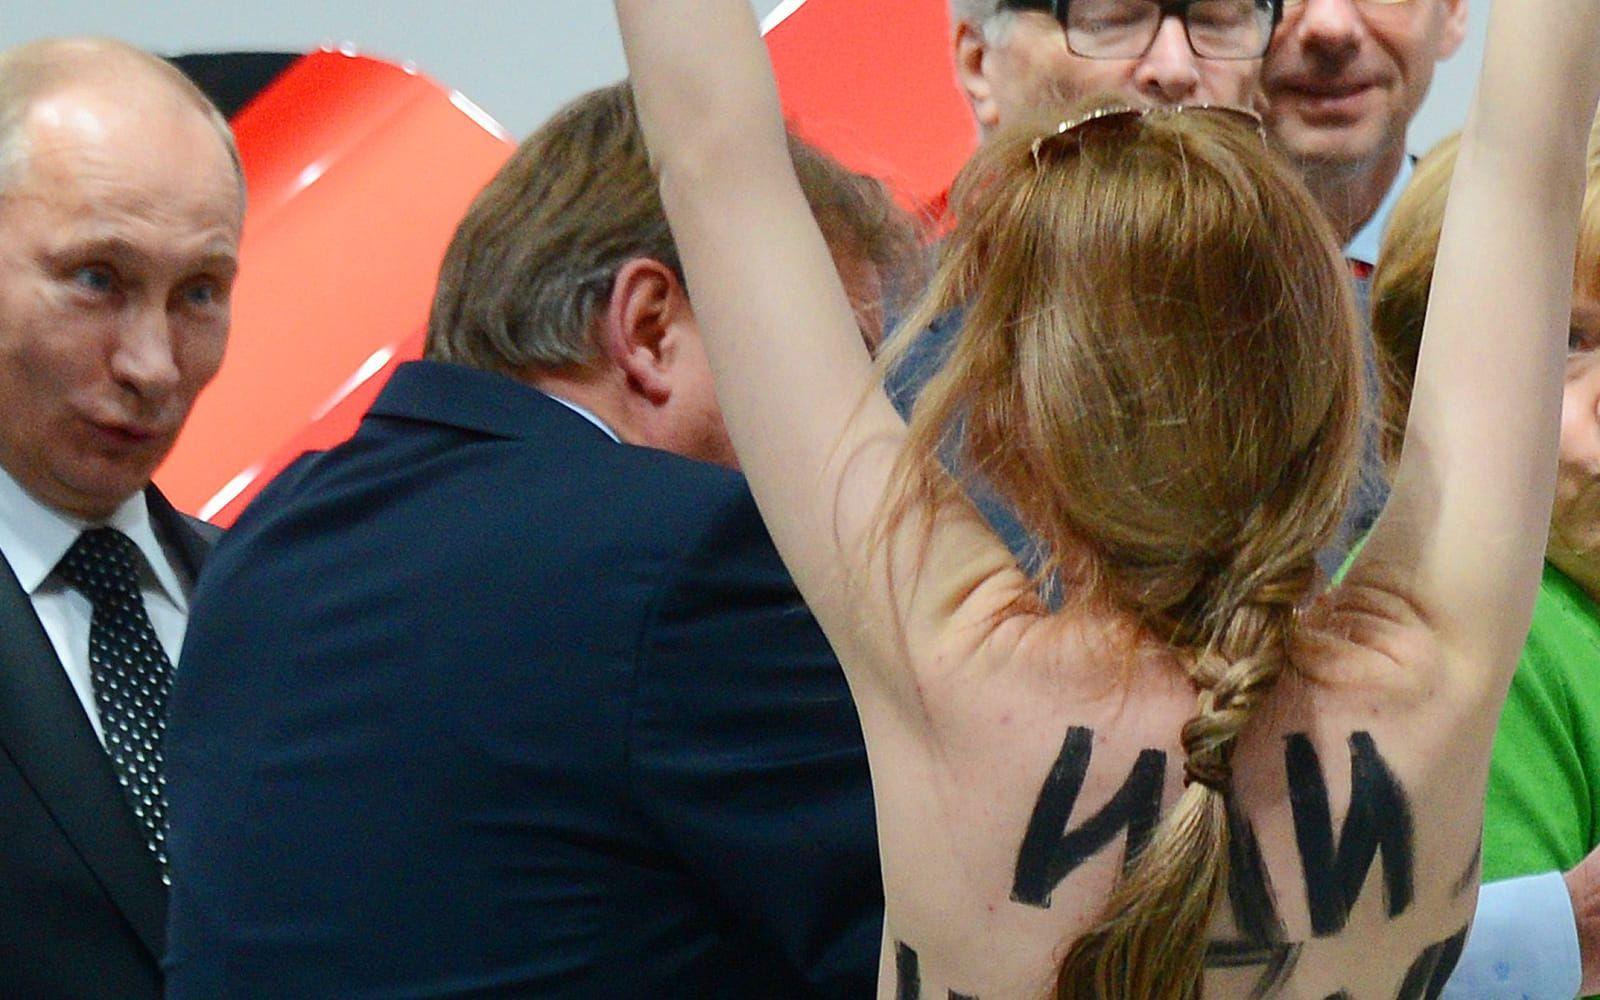 <strong>FÖRSKRÄCKT? NEJ FÖRTJUST. </strong>Aktivistgruppen Femen orsakade uppståndelse när de störtade in mot Vladimir Putin som var på statsbesök i Tyskland 2013. Medan de övriga politikerna gjorde allt för att undvika en konfrontation med de barbröstade kvinnorna verkade Putin förtjust. <a href="http://www.spiegel.de/international/europe/putin-visibly-amused-by-topless-femen-protest-in-germany-a-893128.html">Enligt tyska Spiegel</a> så log han och gav två tummar upp.